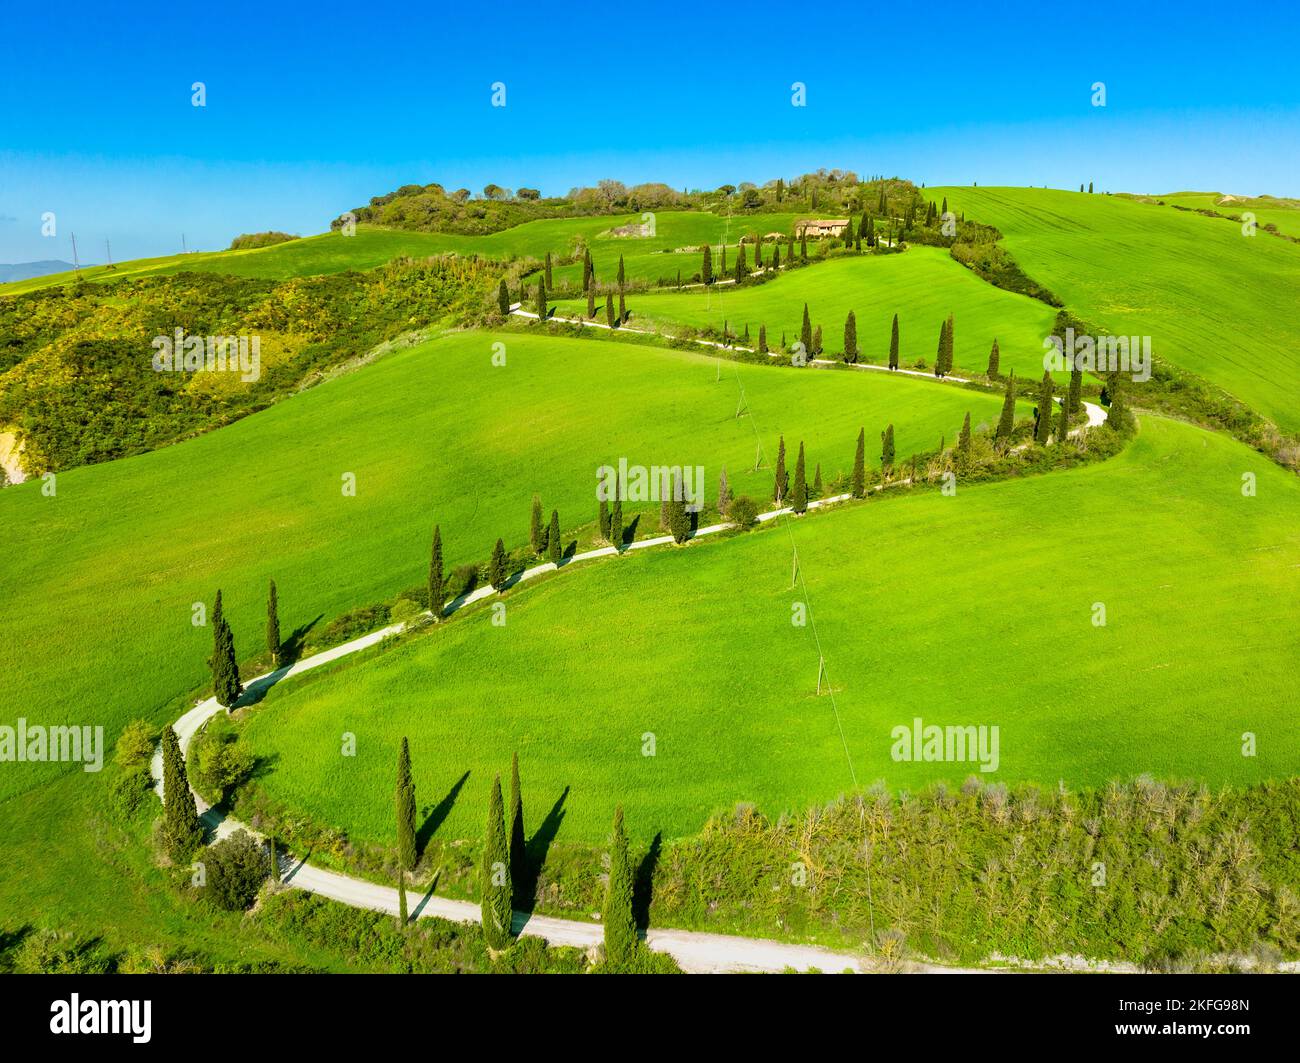 Blick auf eine kurvenreiche Straße mit Zypressen in der toskanischen Landschaft. Chianciano, Provinz Siena, Italien Stockfoto